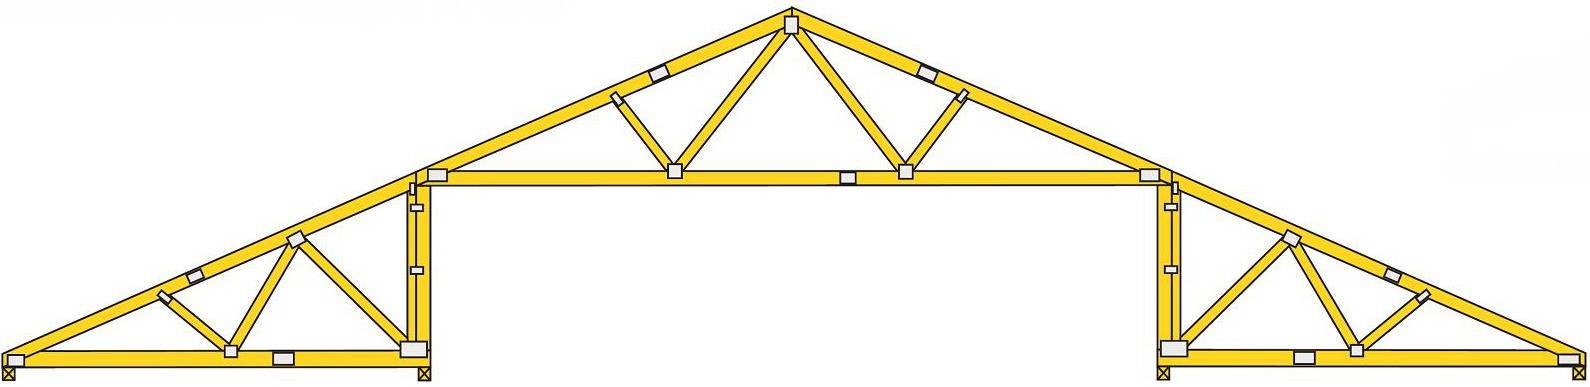 Устройство стропильной системы вальмовой крыши: чертежи, схемы, фото